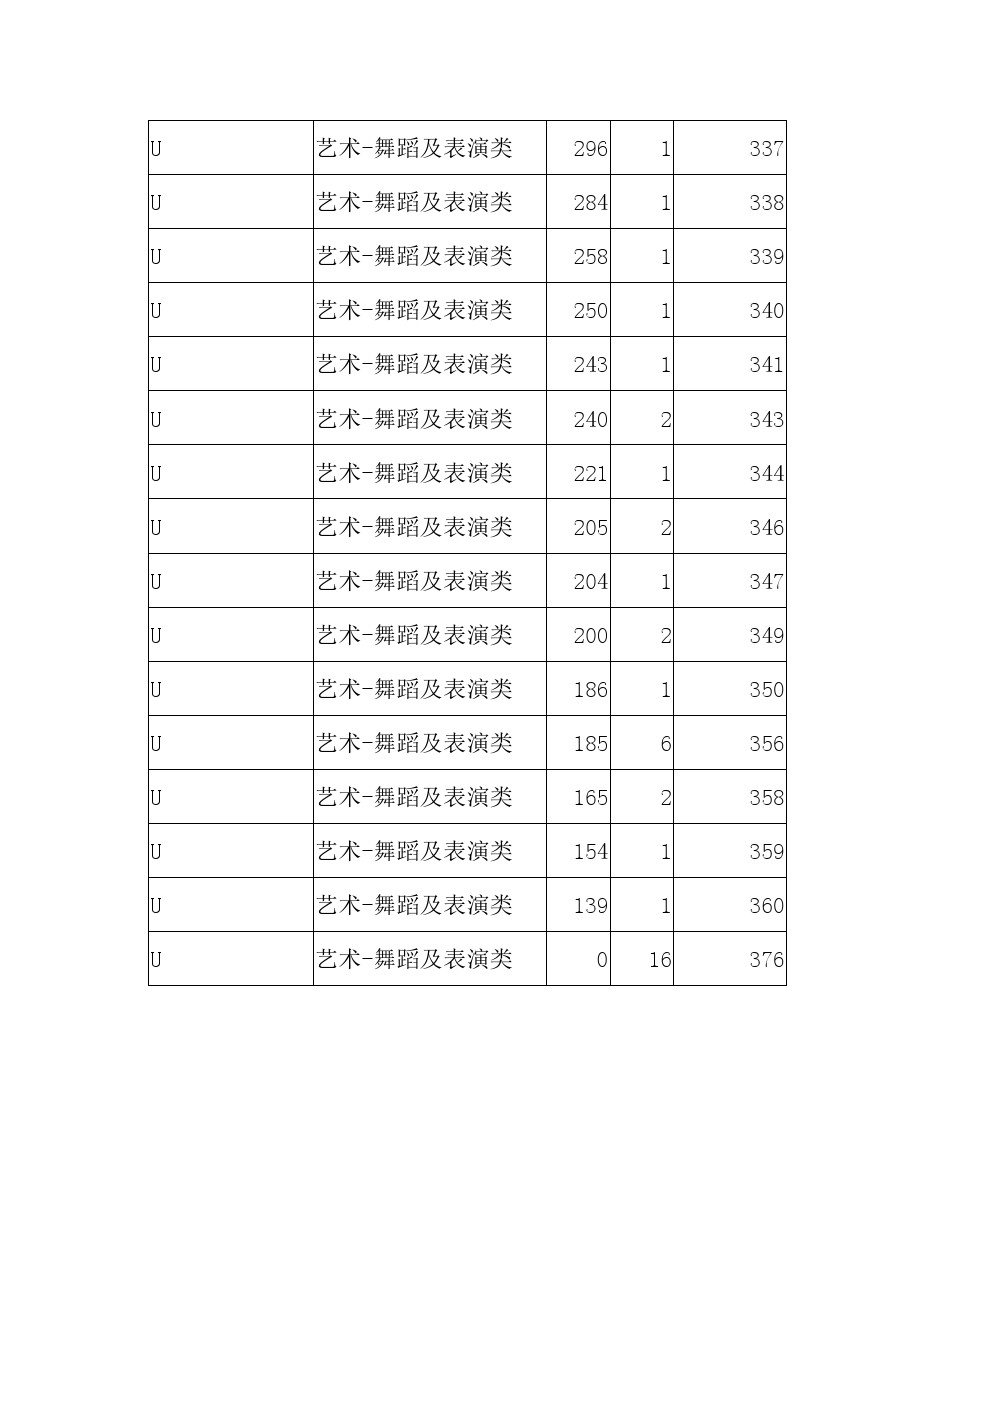 2021年河北省高职单招考试八类舞蹈及表演类一分一档表 